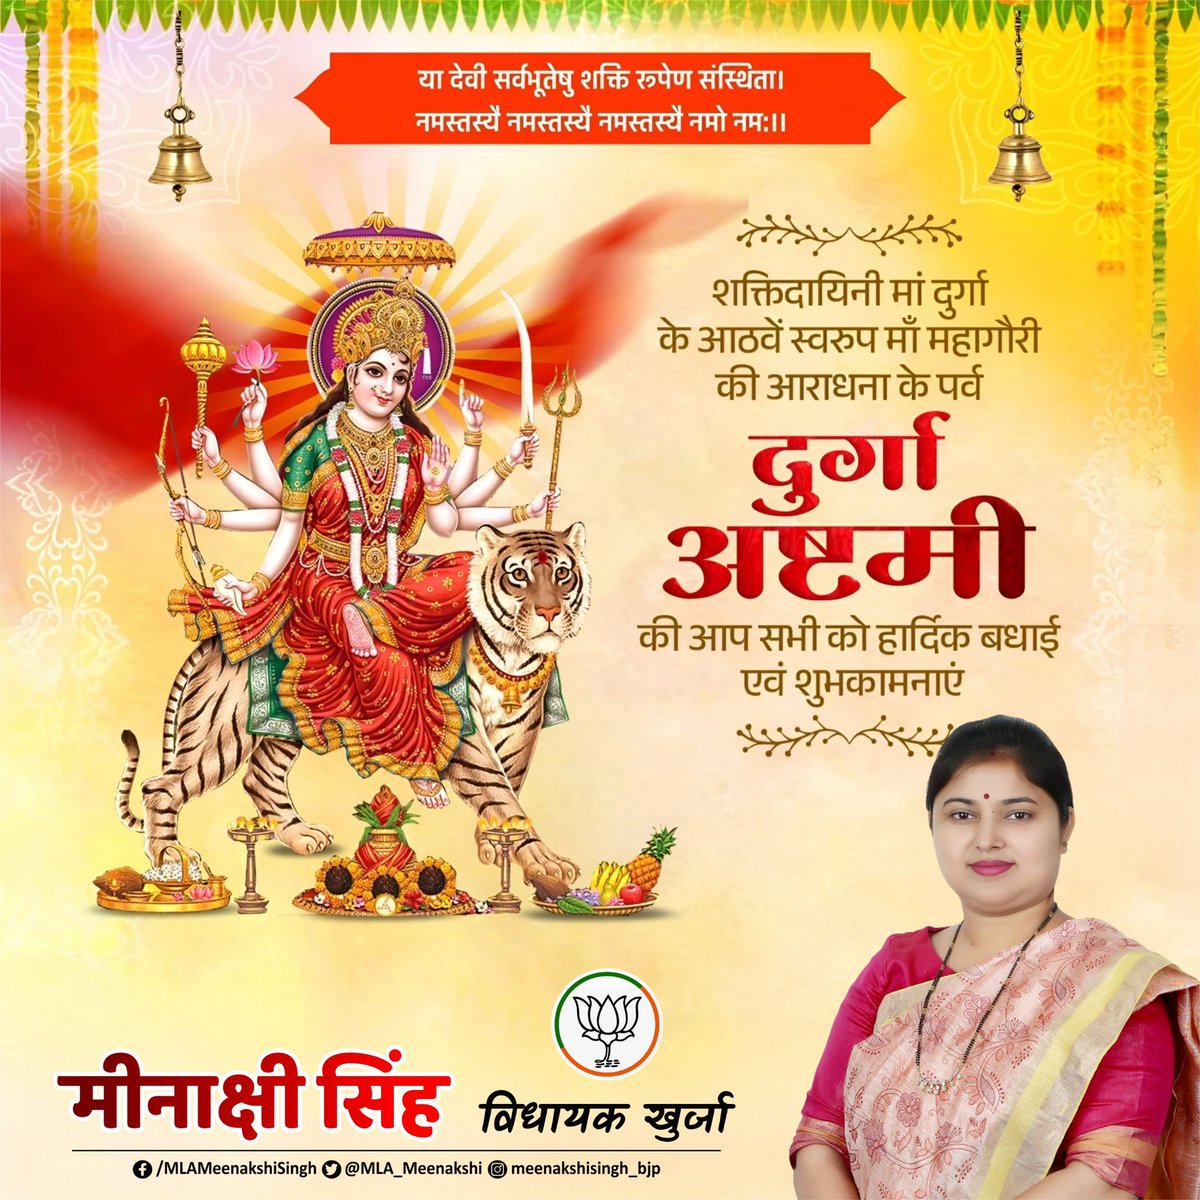 आप सभी को पावन पर्व दुर्गा अष्टमी की हार्दिक शुभकामनाएँ…

#DurgaAshtami